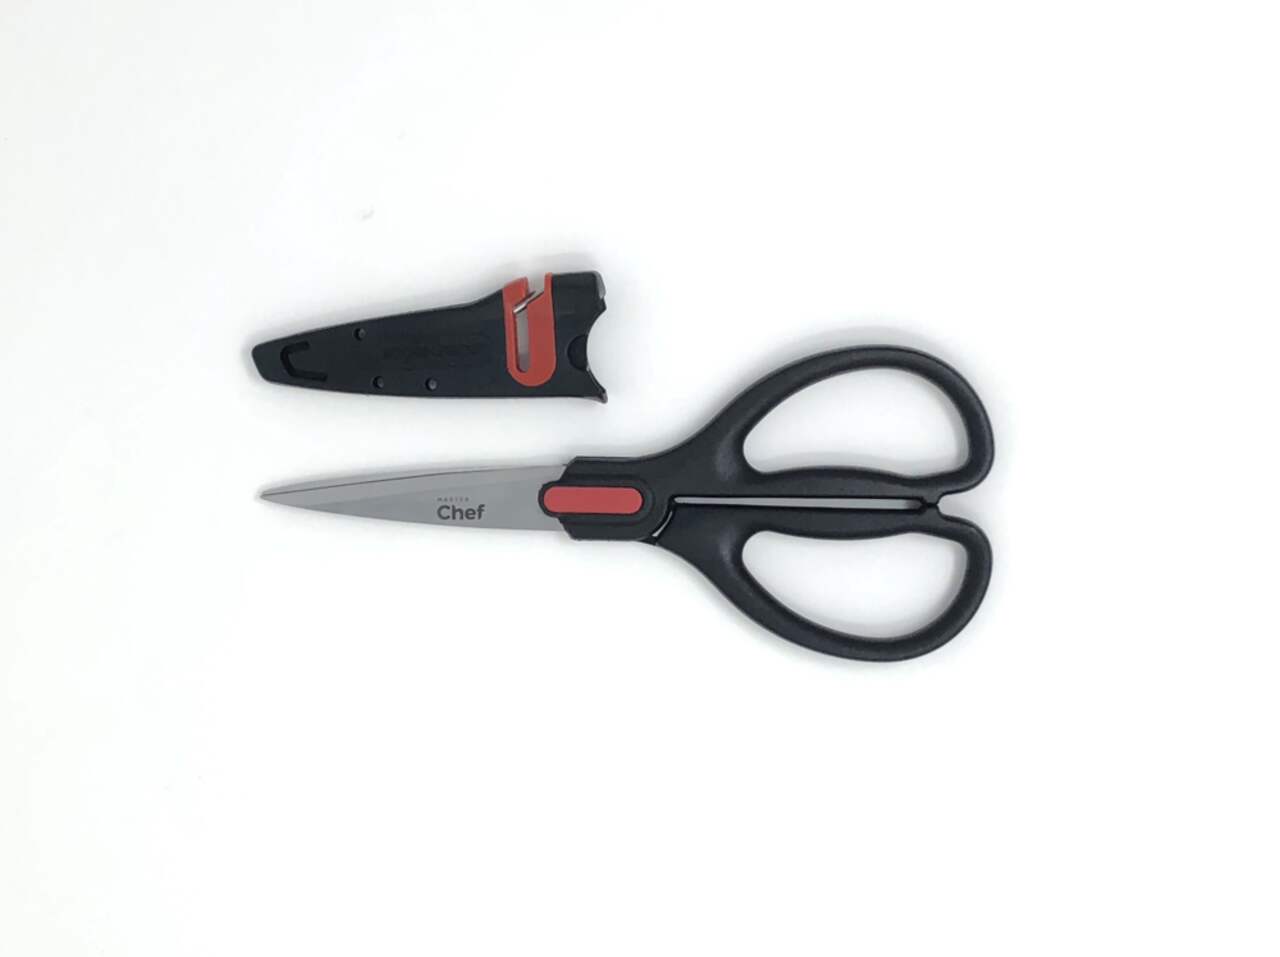 affutage de couteaux , ciseaux , outils de jardin ou d'atelier à